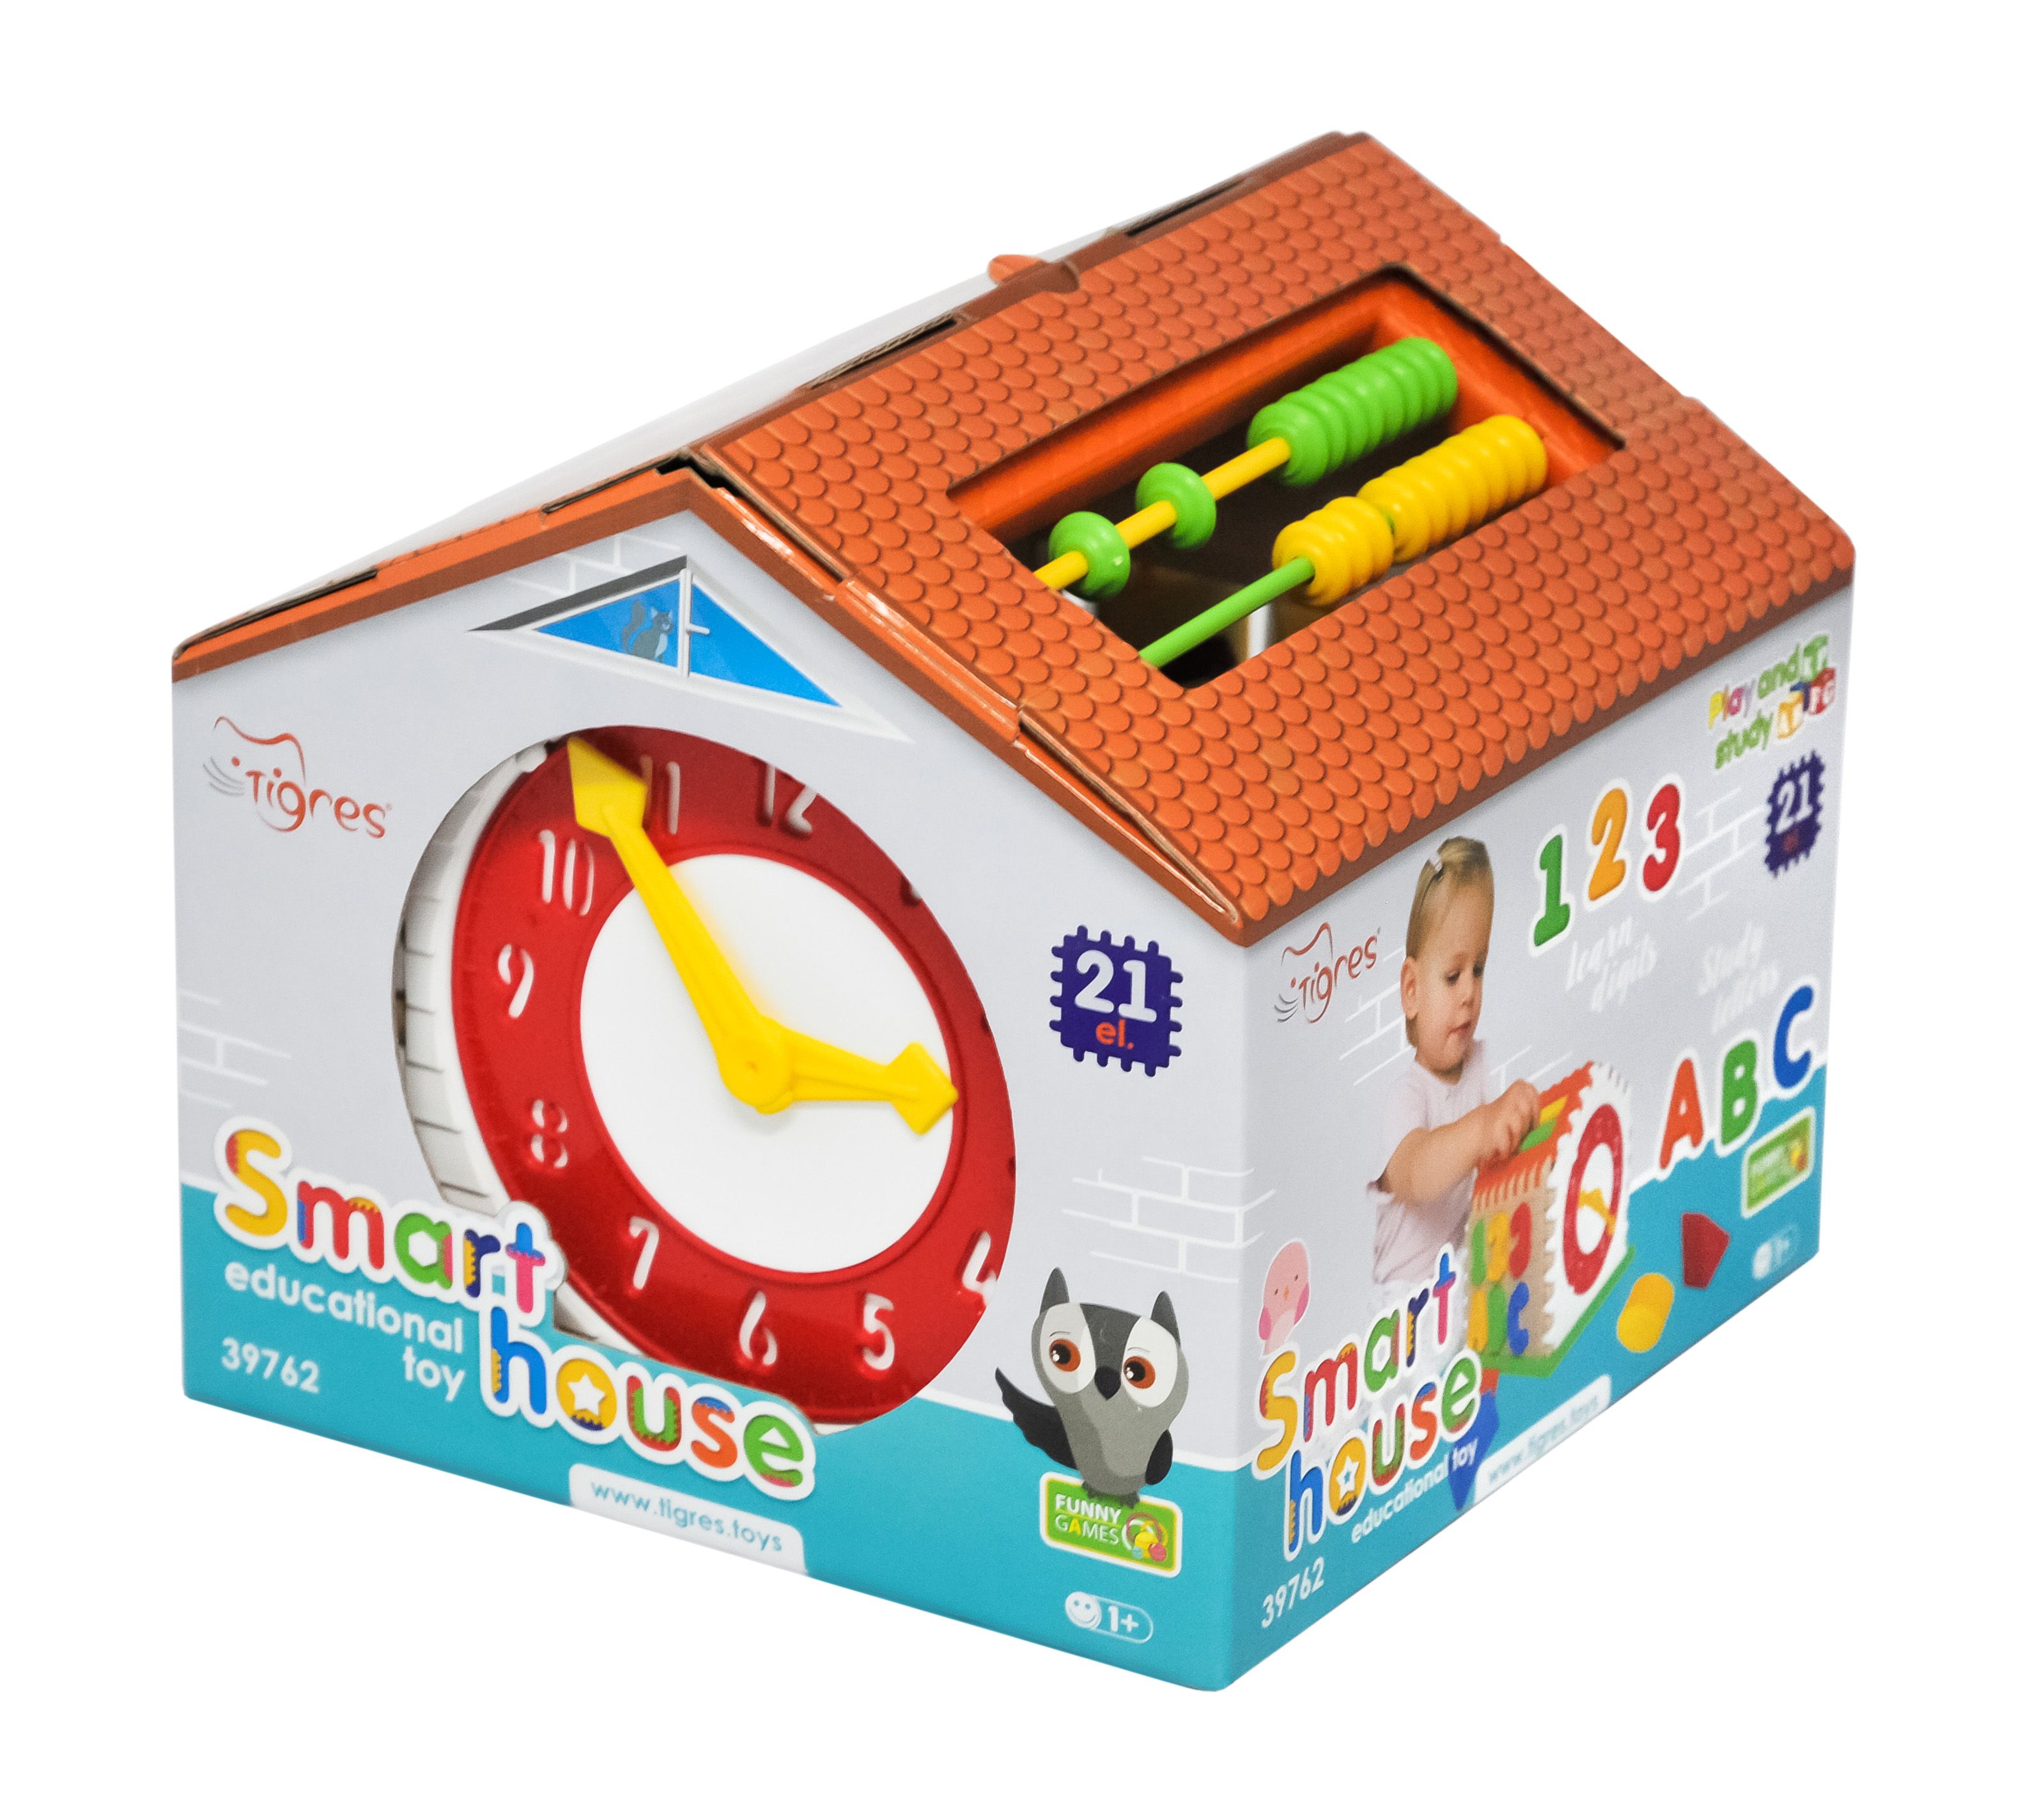 Іграшка-сортер Tigres Smart house, в коробці, 21 елемент (39762) - фото 3